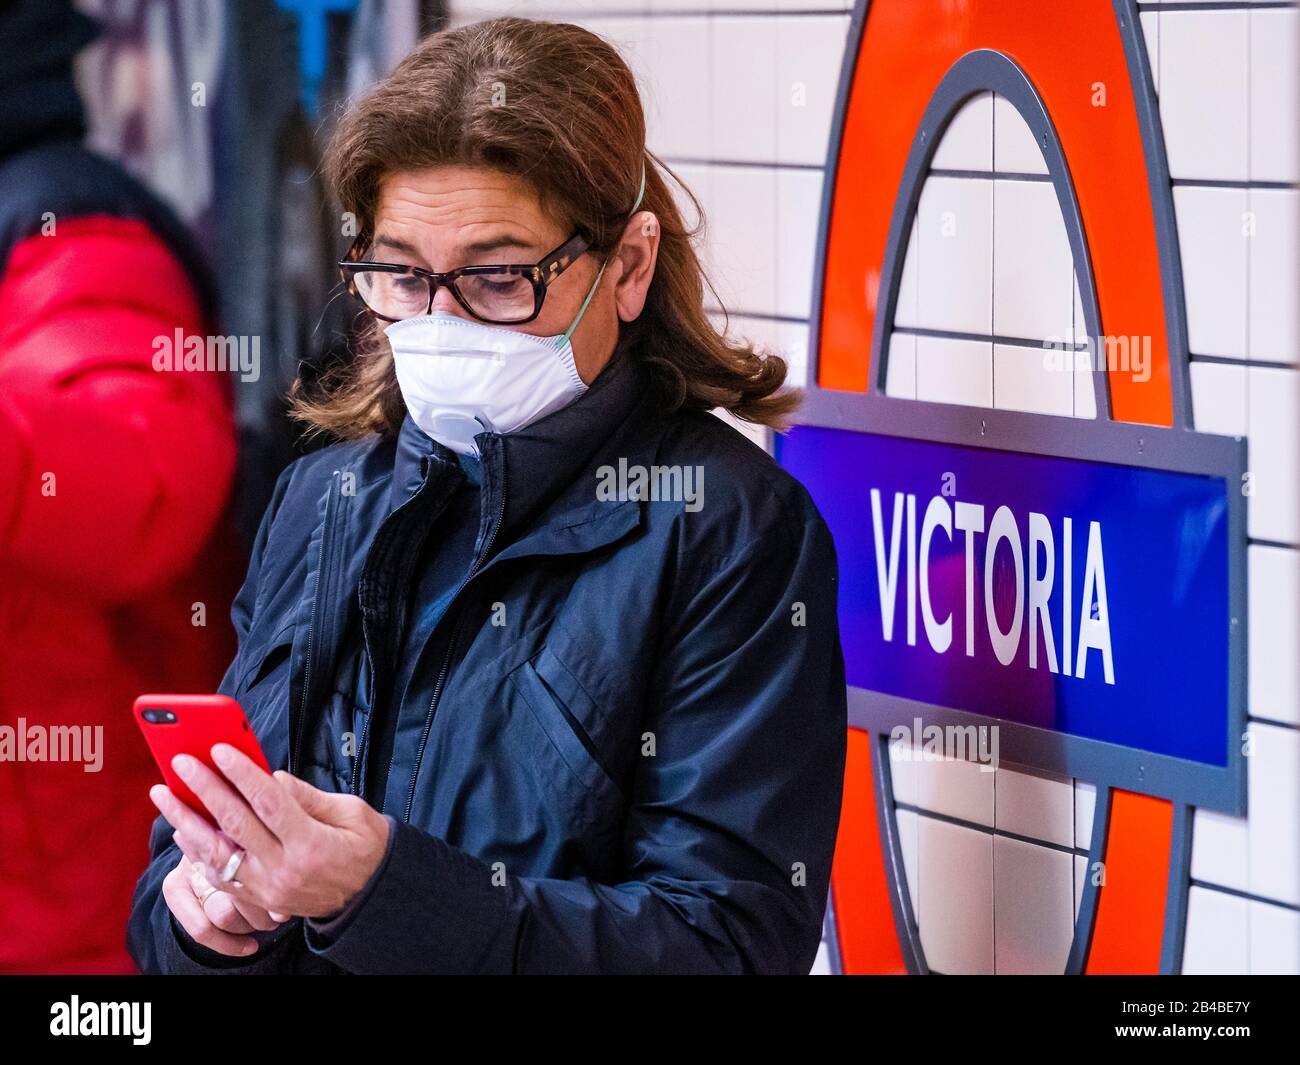 Londres, Royaume-Uni. 6 mars 2020. Les masques sont portés comme protection contre le Coronavirus (covid 19) dans le métro Lonfdon, Londres. Crédit: Guy Bell/Alay Live News Banque D'Images